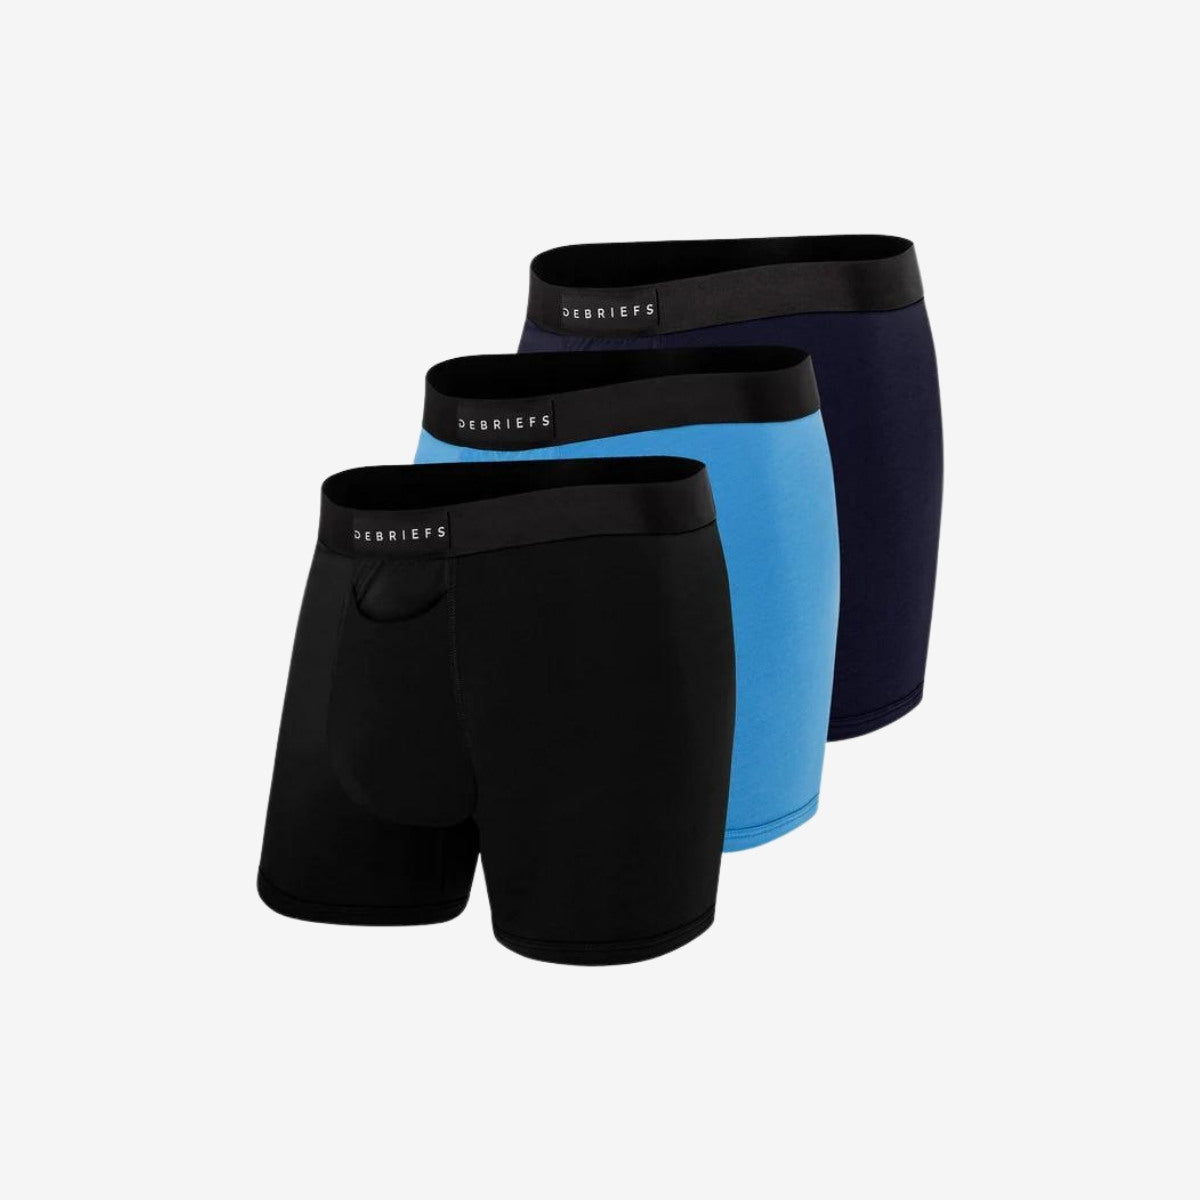 Mens Boxer Briefs Underwear Online 3 pack - Black blue navy